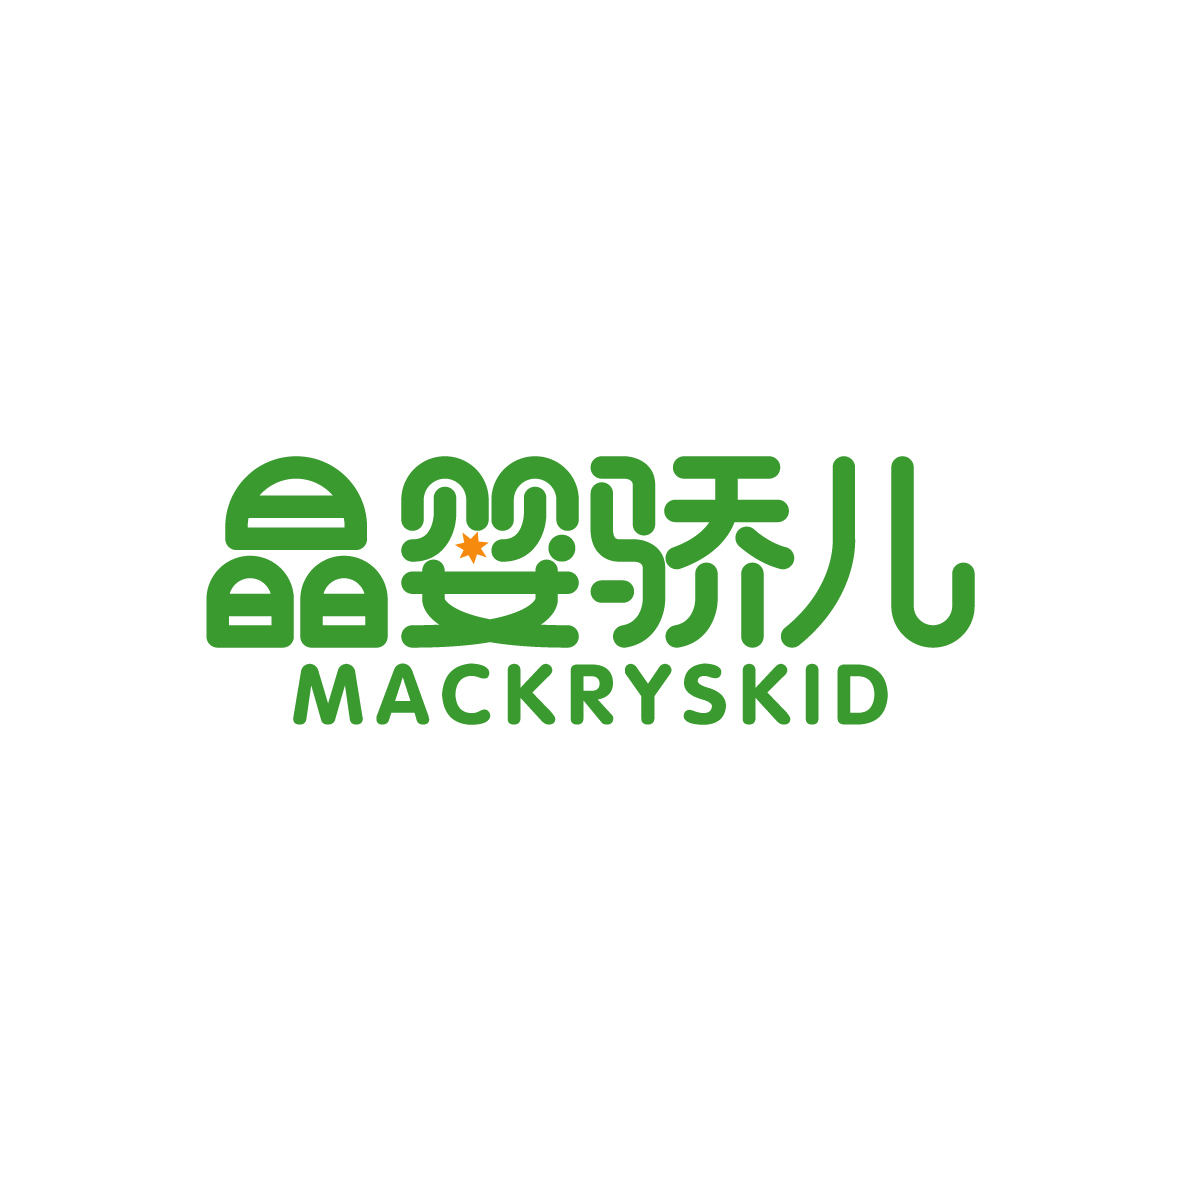 陶跃辉商标晶婴骄儿 MACKRYSKID（44类）商标转让多少钱？